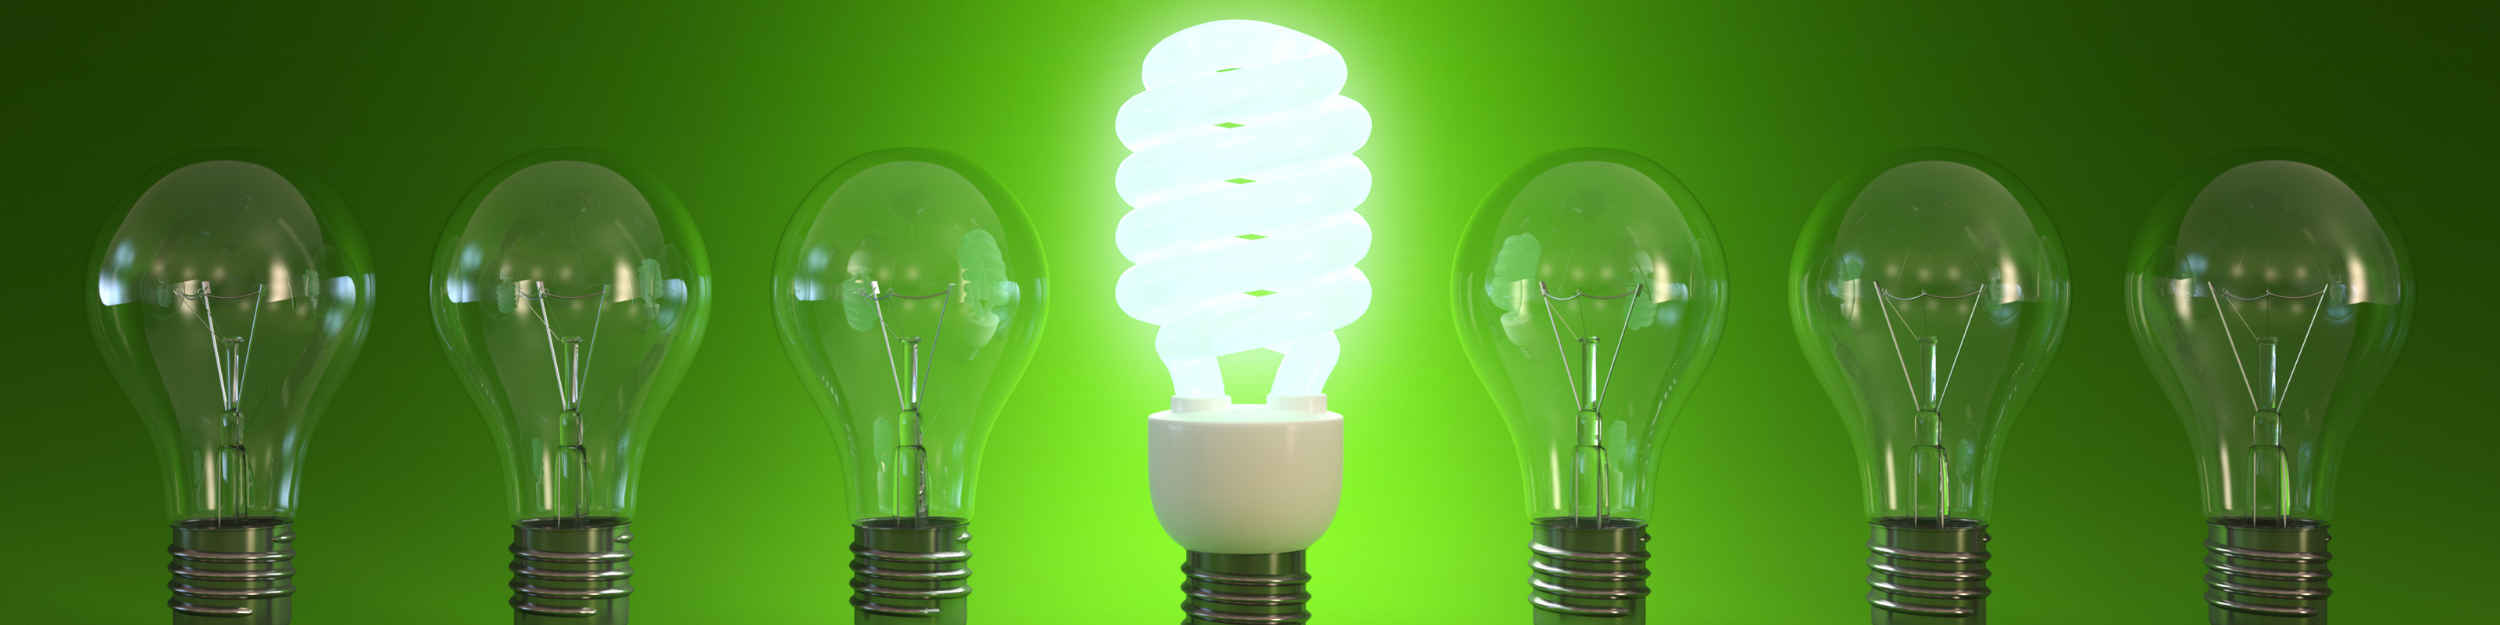 De nouvelles ampoules économes en énergie